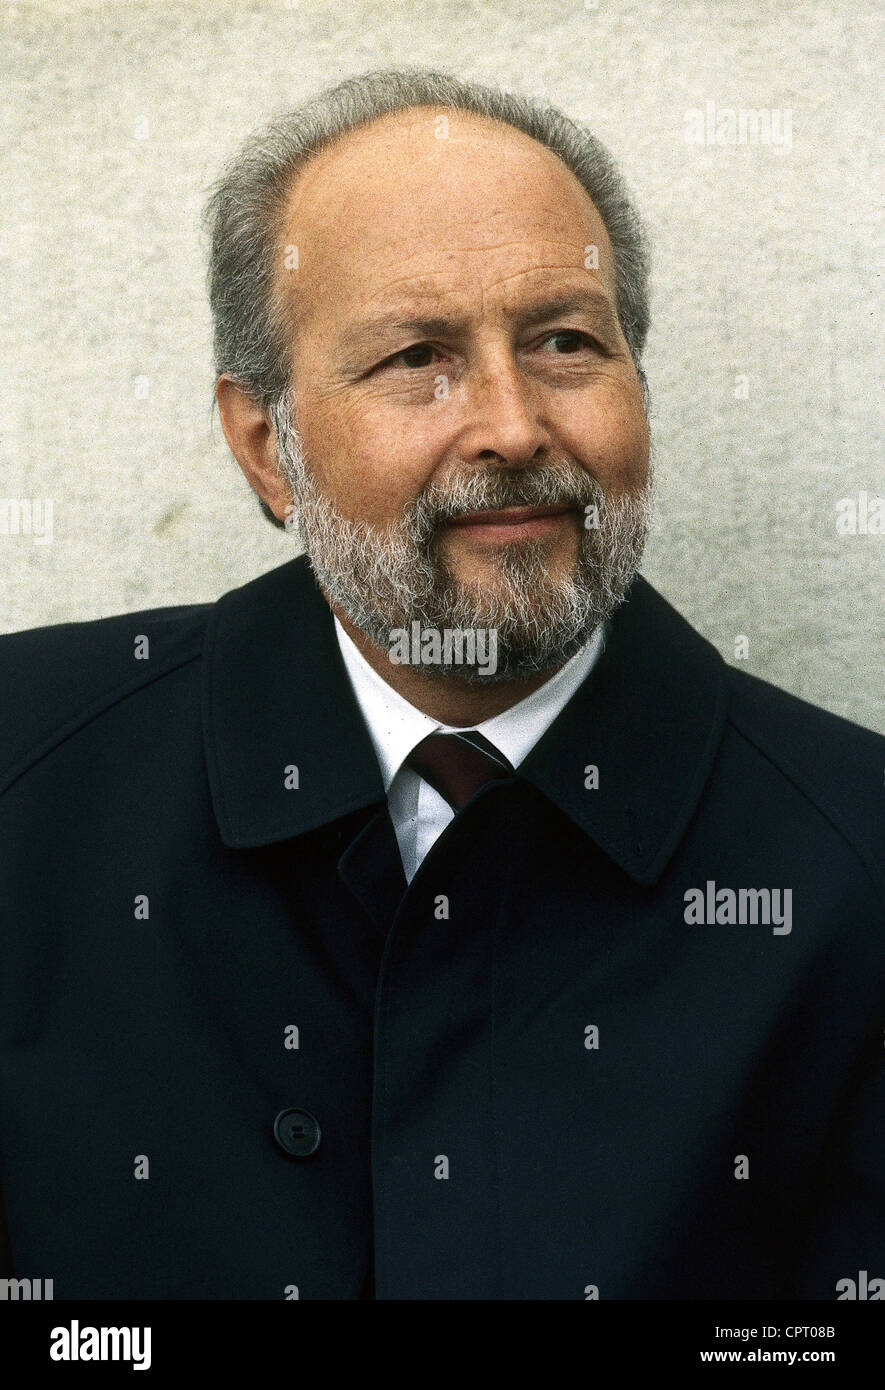 Engelhard, Hans Arnold, 16.3.1934 - 11.3.2008, politico tedesco (FDP), ministro federale della giustizia 1982 - 1991, ritratto, 1980s, Foto Stock